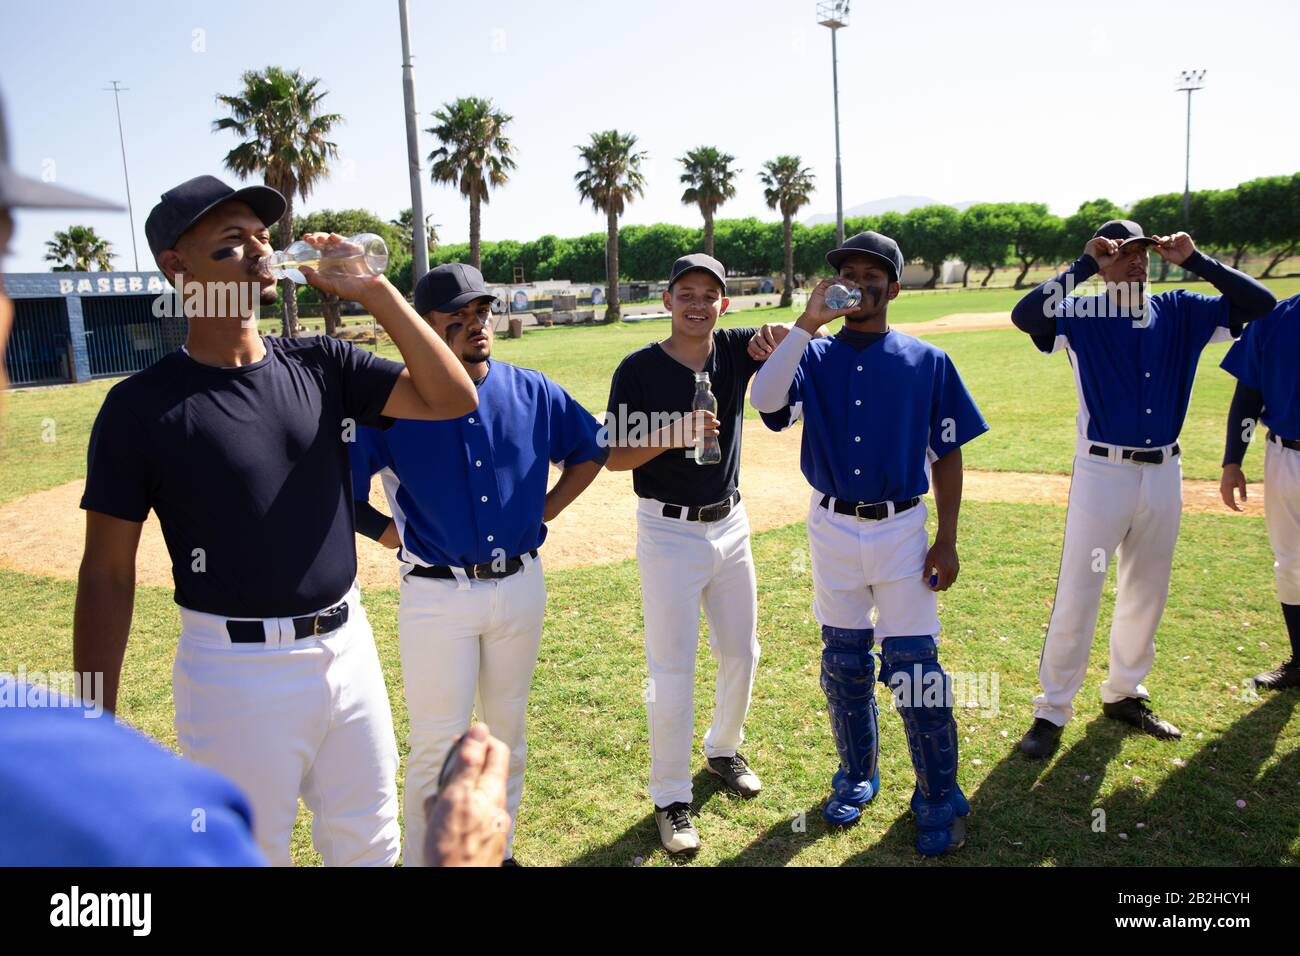 Joueurs de base-ball buvant de l'eau Banque D'Images